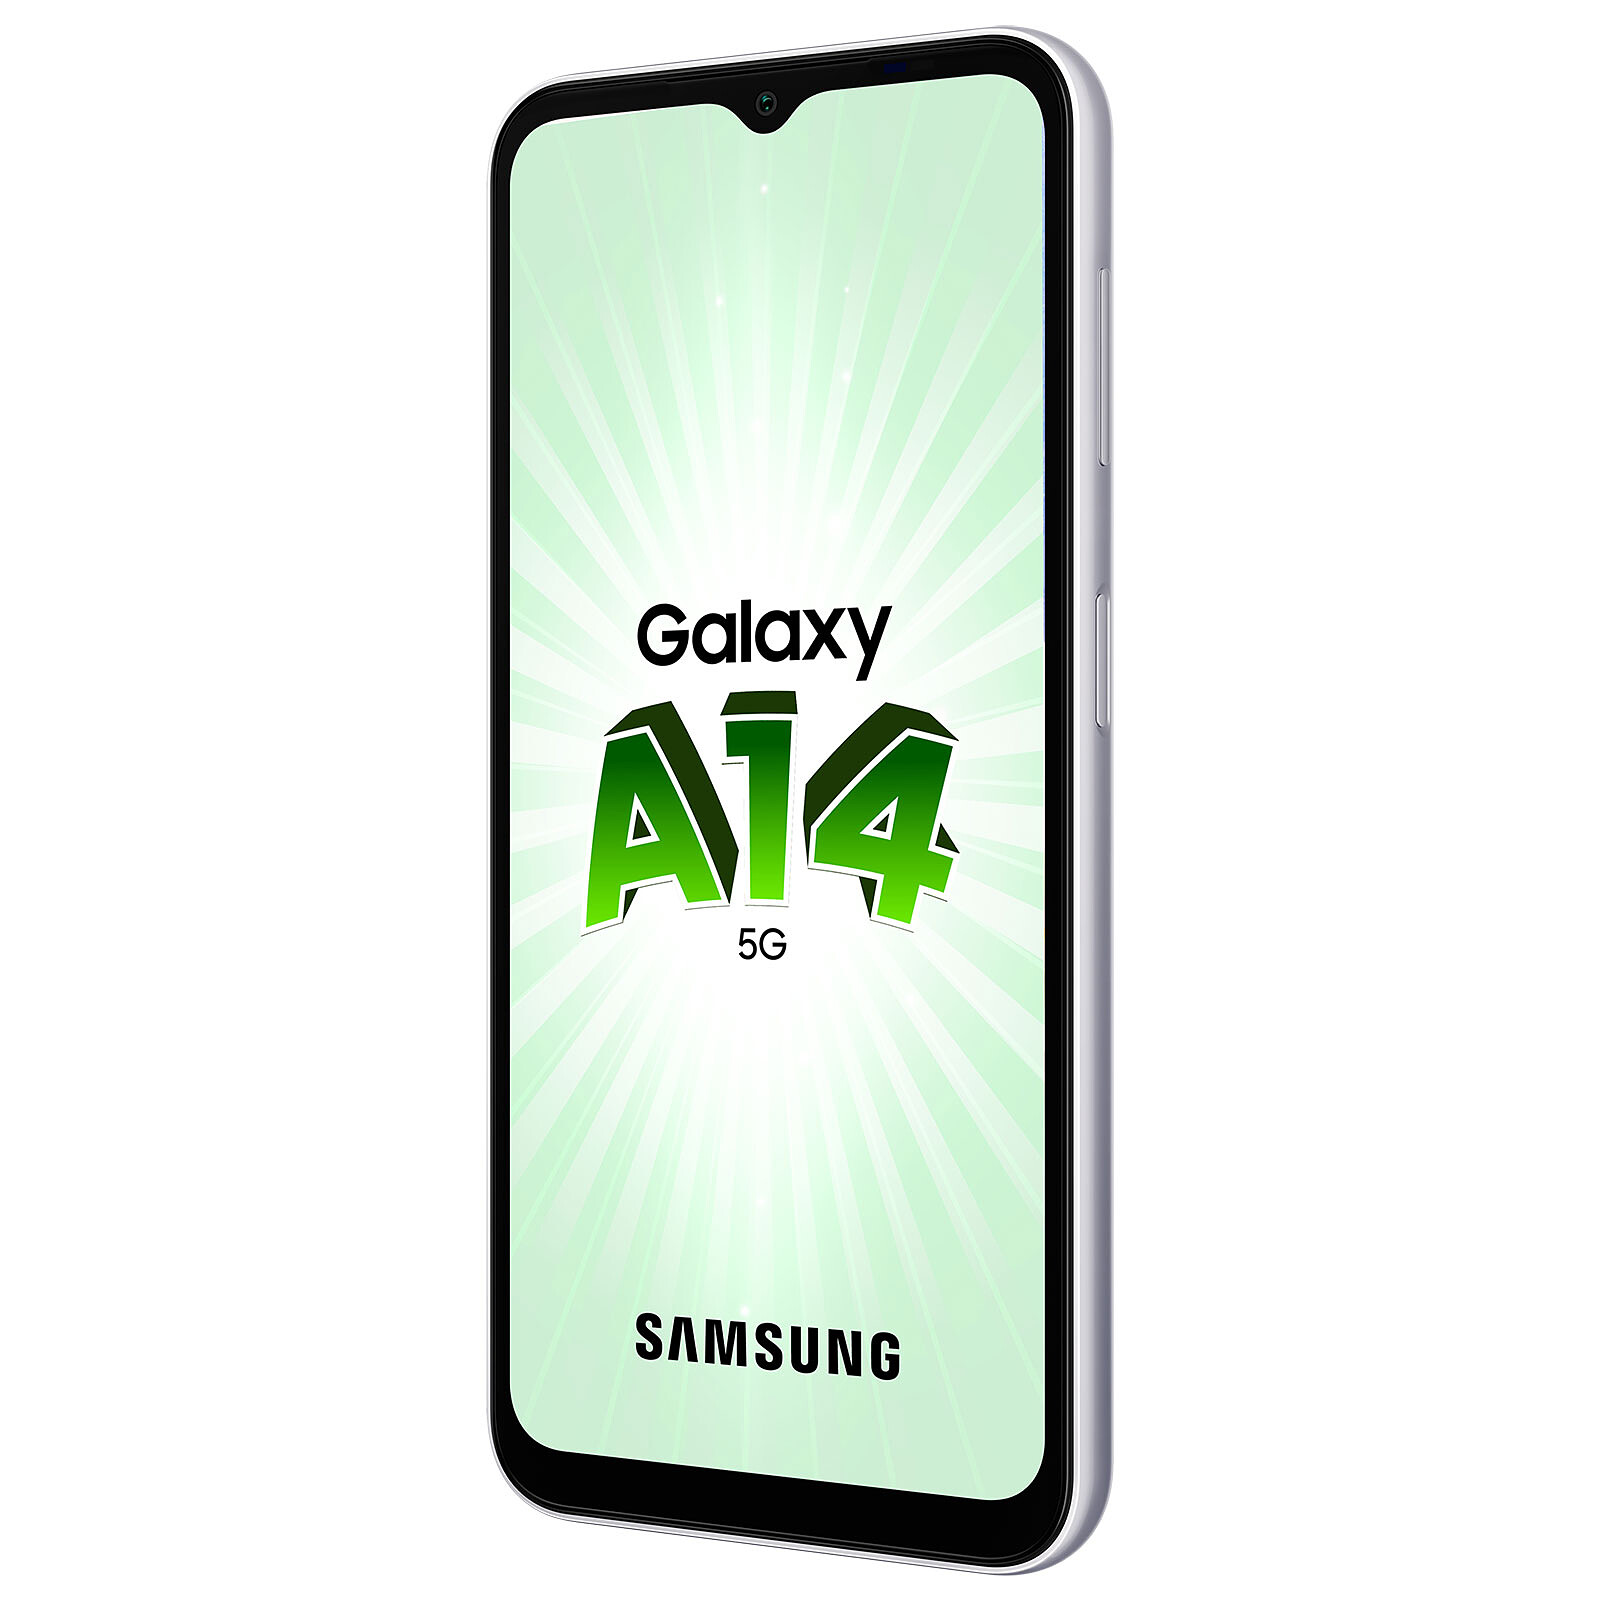 Samsung Galaxy A14 Silver, 4GB RAM, 64GB Storage 